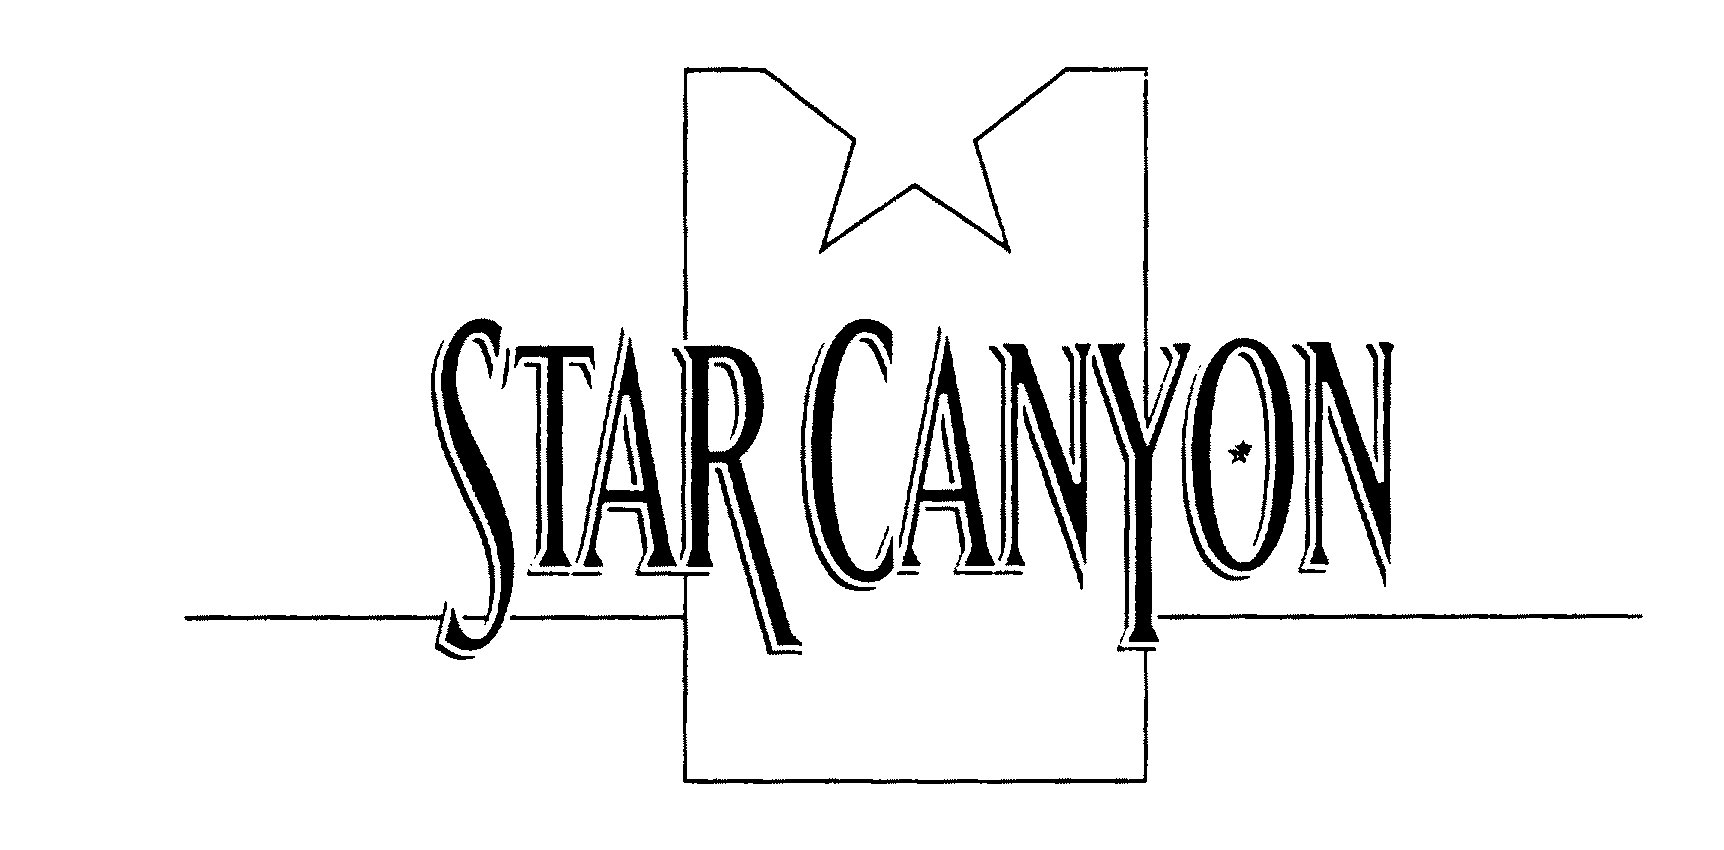  STAR CANYON